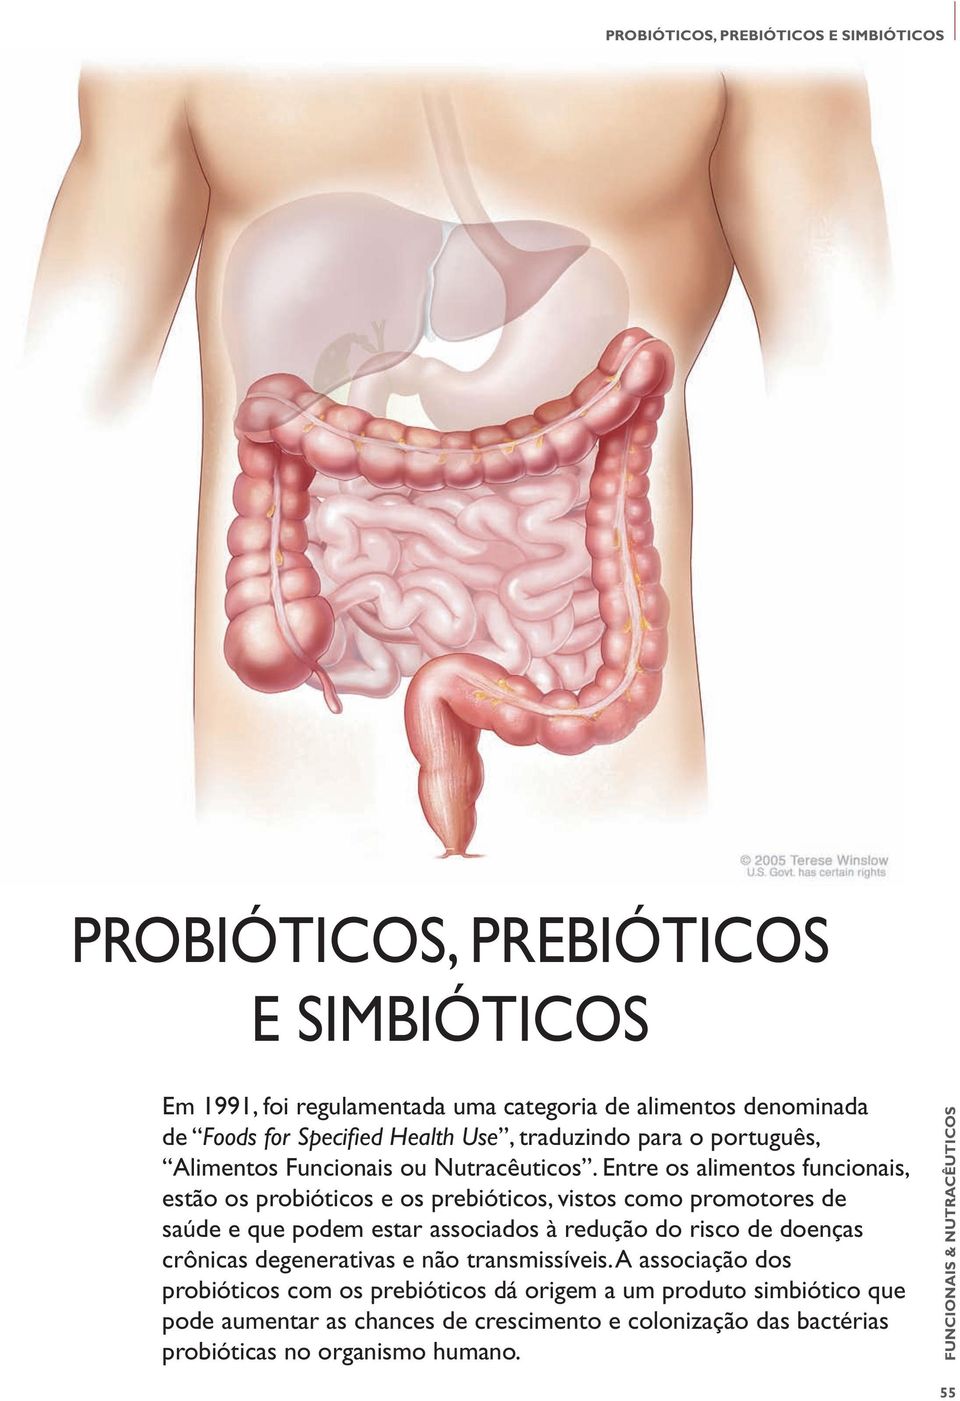 Entre os alimentos funcionais, estão os probióticos e os prebióticos, vistos como promotores de saúde e que podem estar associados à redução do risco